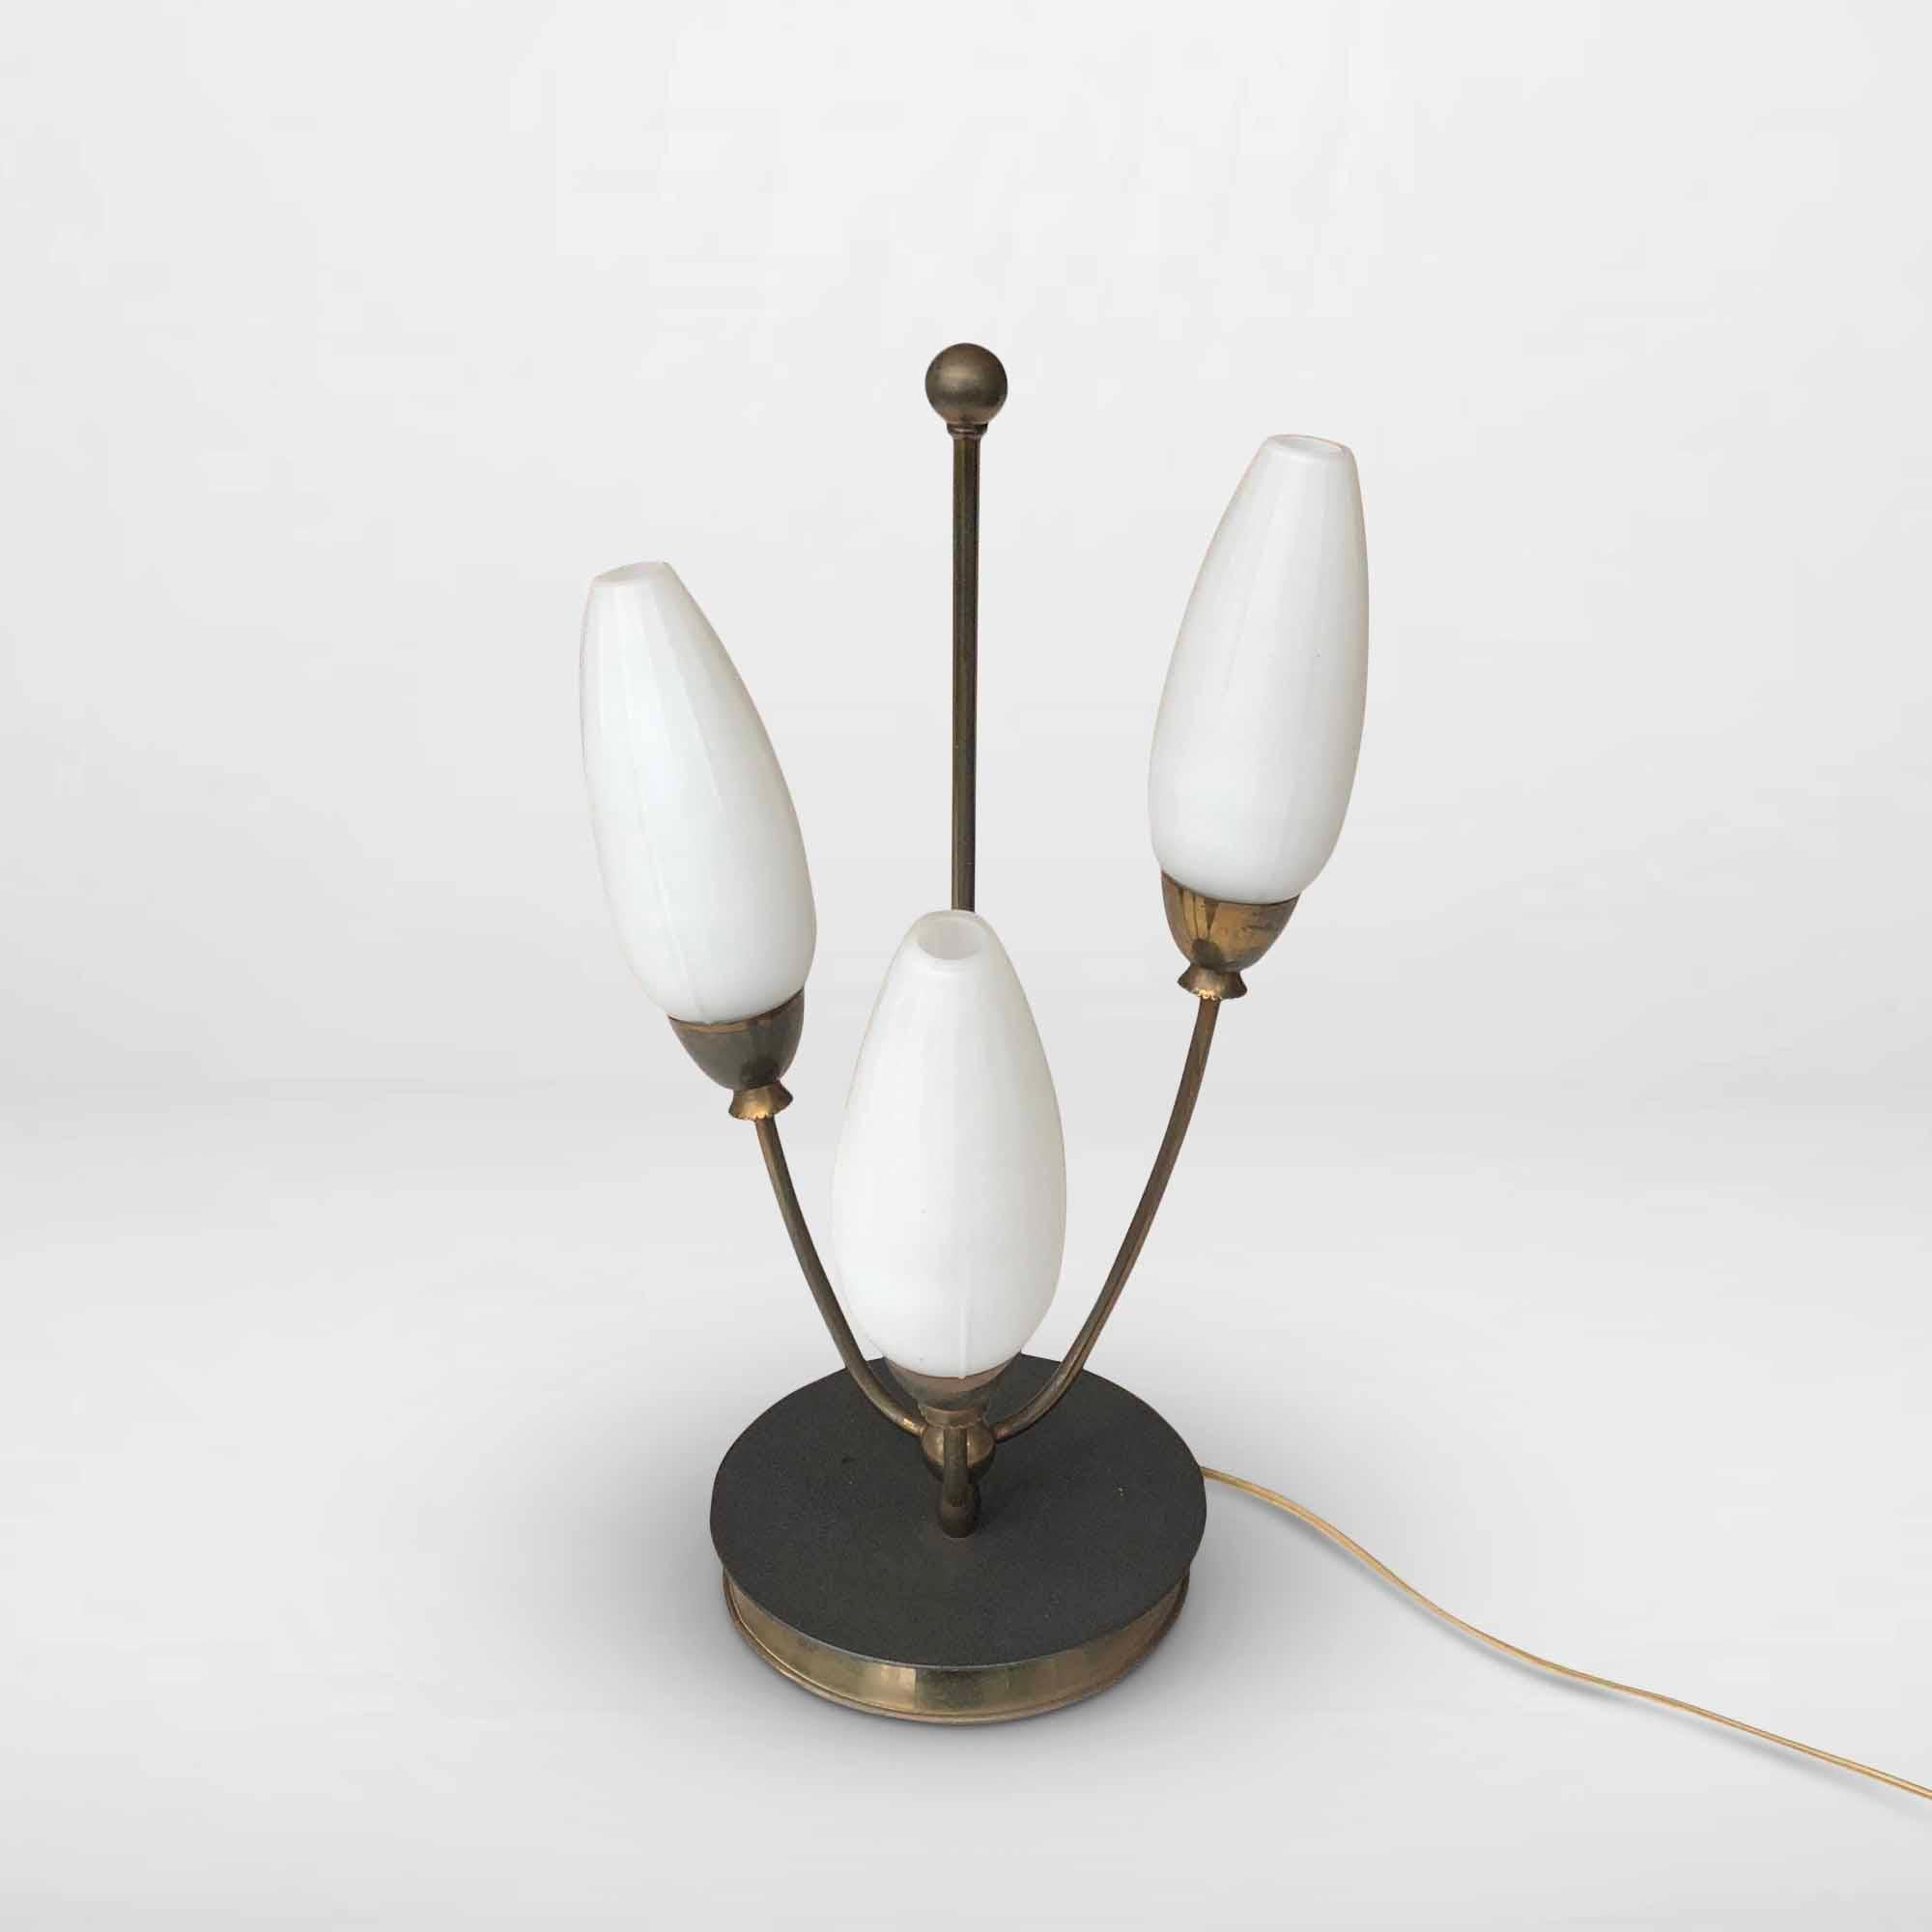 Einzigartige Vintage-Tischlampe mit rundem Messingsockel, 3 gebogenen Messingstäben und Lampenschirmen aus weißem, mattiertem, ovalem/konvexem Glas. Glühbirnen: 3 x E14 max 60 Watt. Die Lampe wurde neu verkabelt.

Designer/Hersteller: Unbekannt für